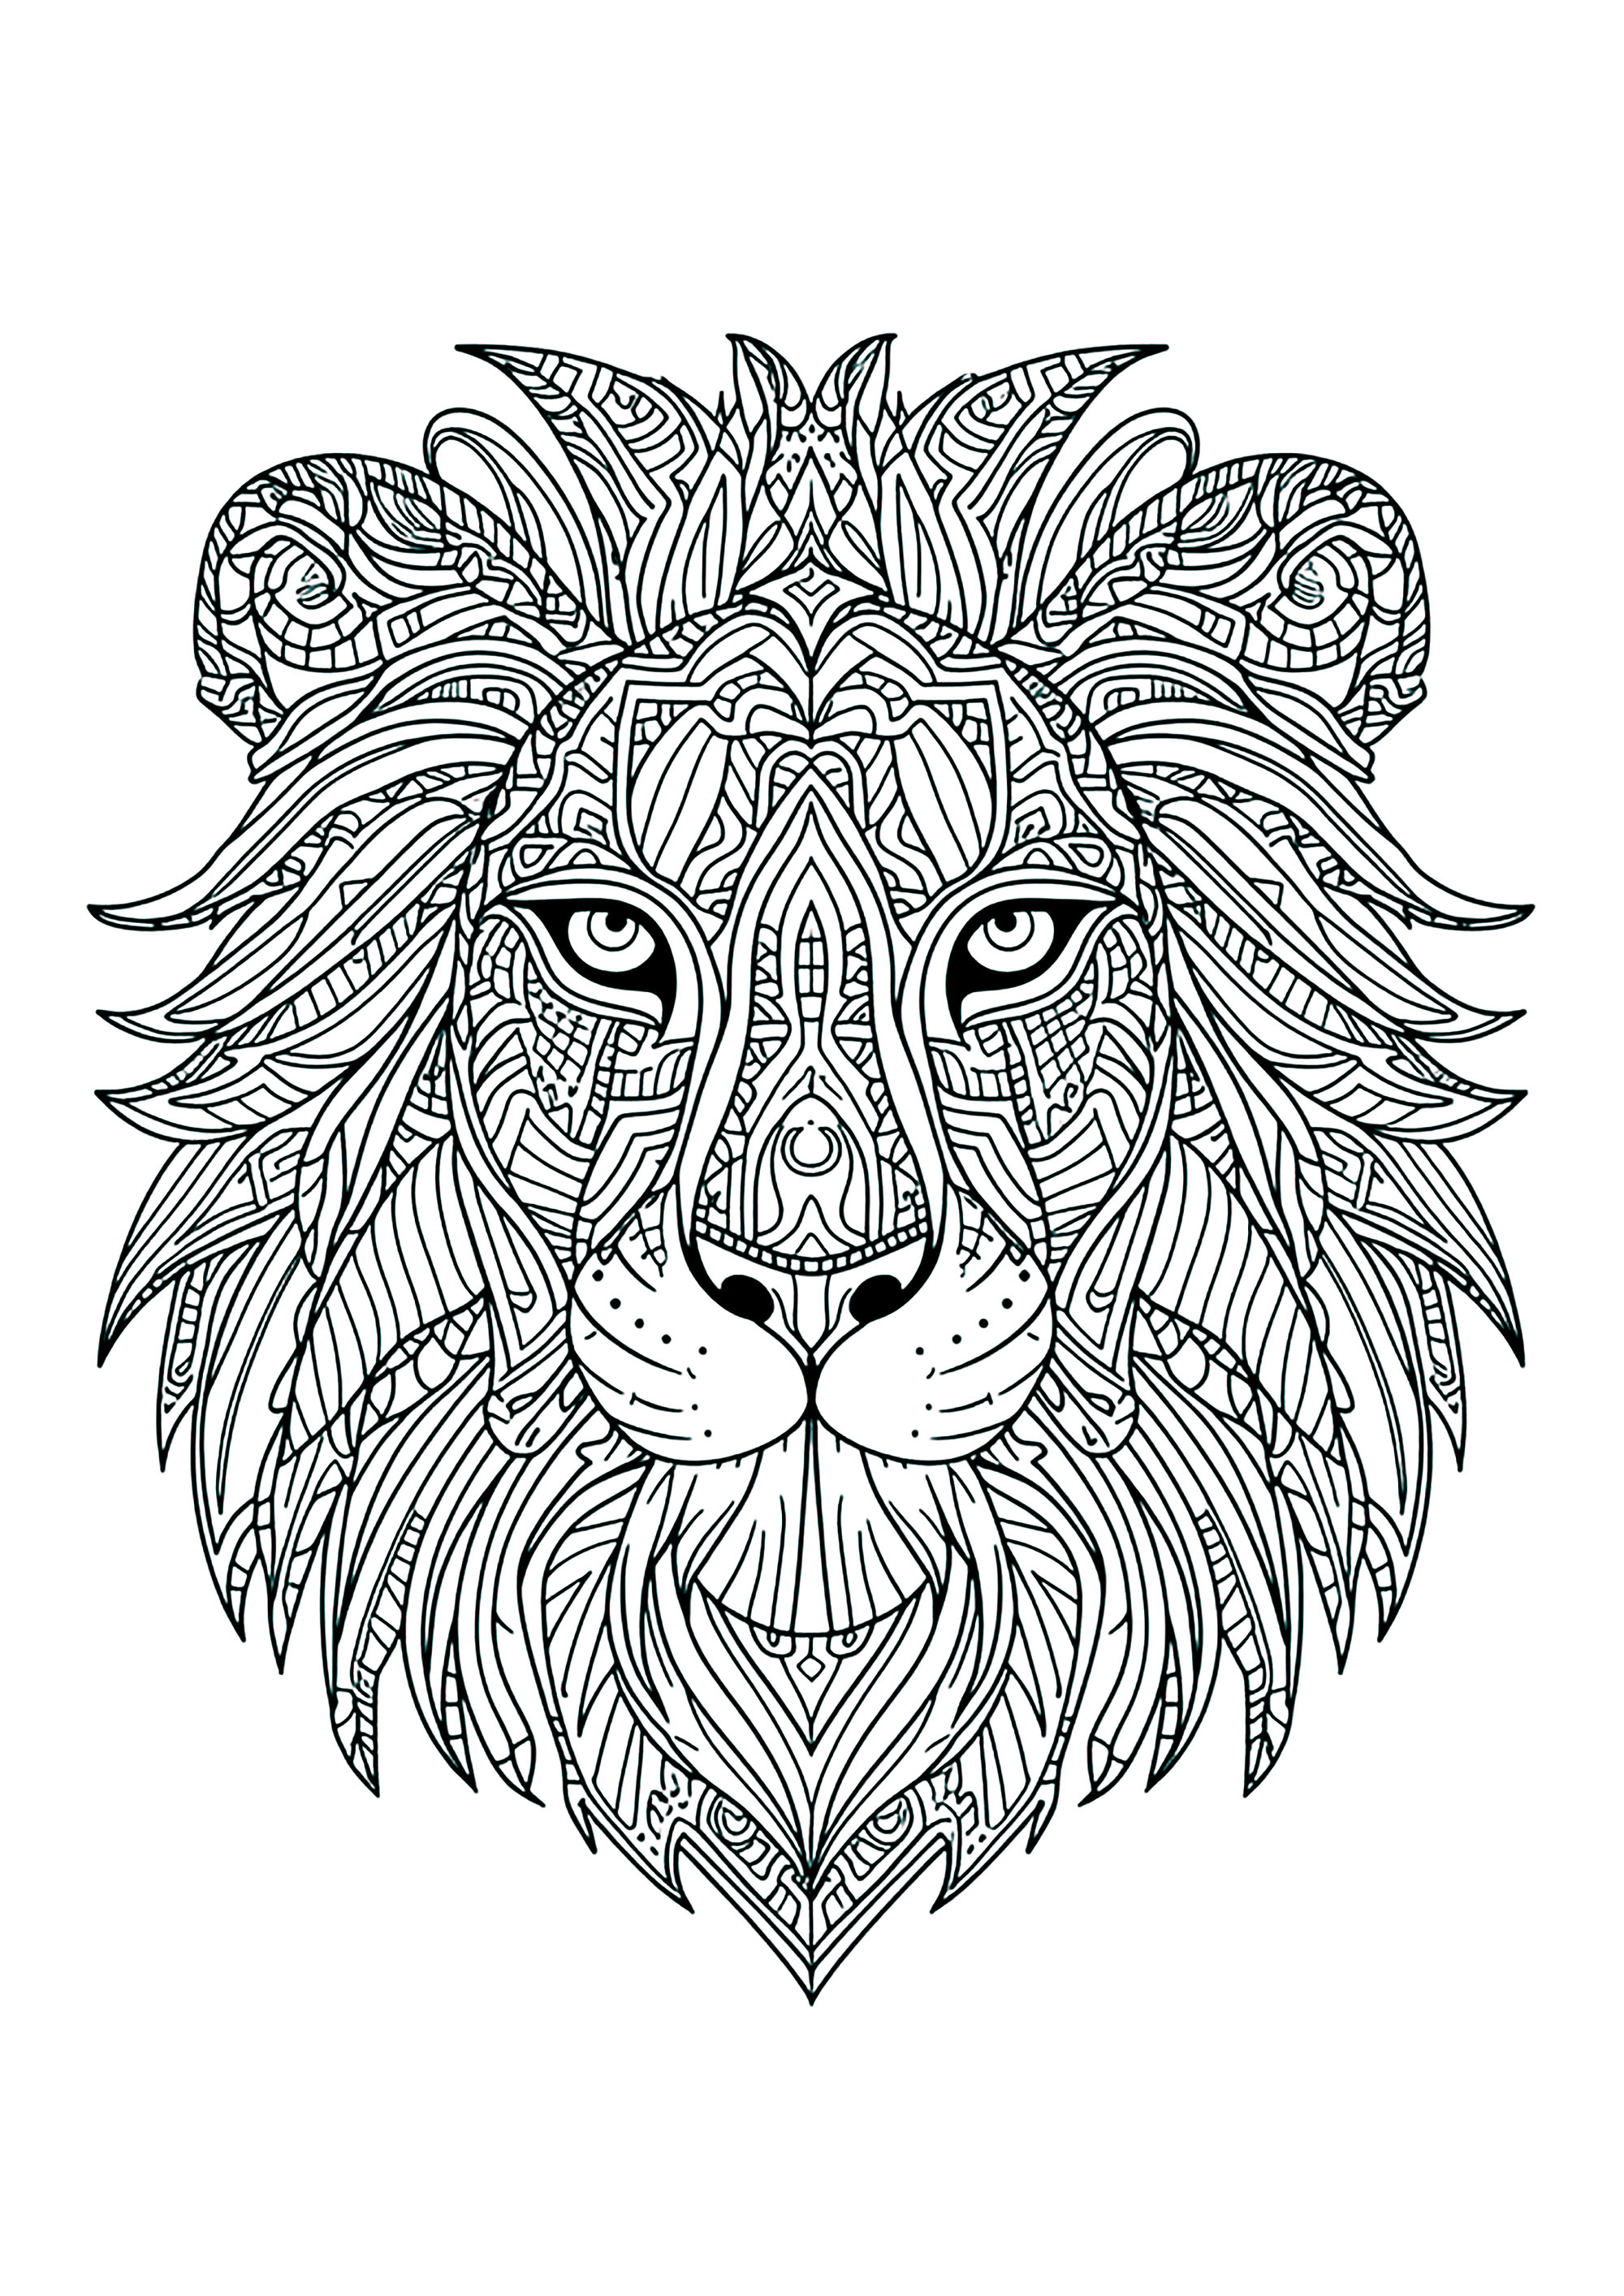 Tête de lion aux nombreux motifs complexes